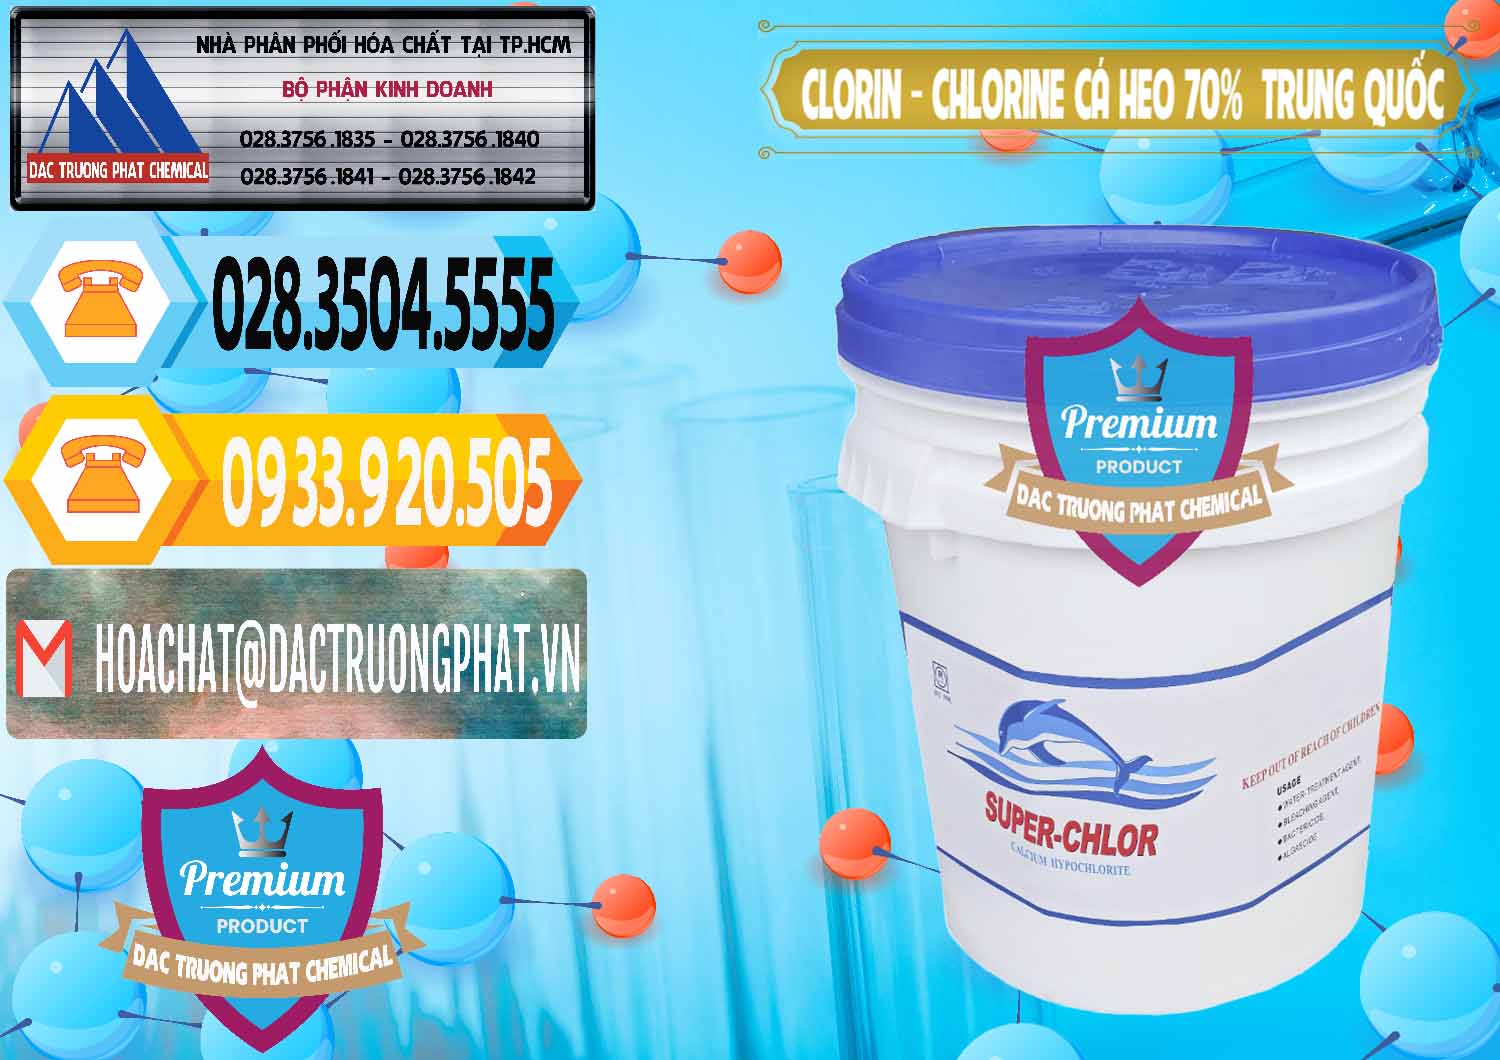 Nơi chuyên phân phối _ bán Clorin - Chlorine Cá Heo 70% Super Chlor Nắp Xanh Trung Quốc China - 0209 - Cty chuyên phân phối - kinh doanh hóa chất tại TP.HCM - hoachattayrua.net